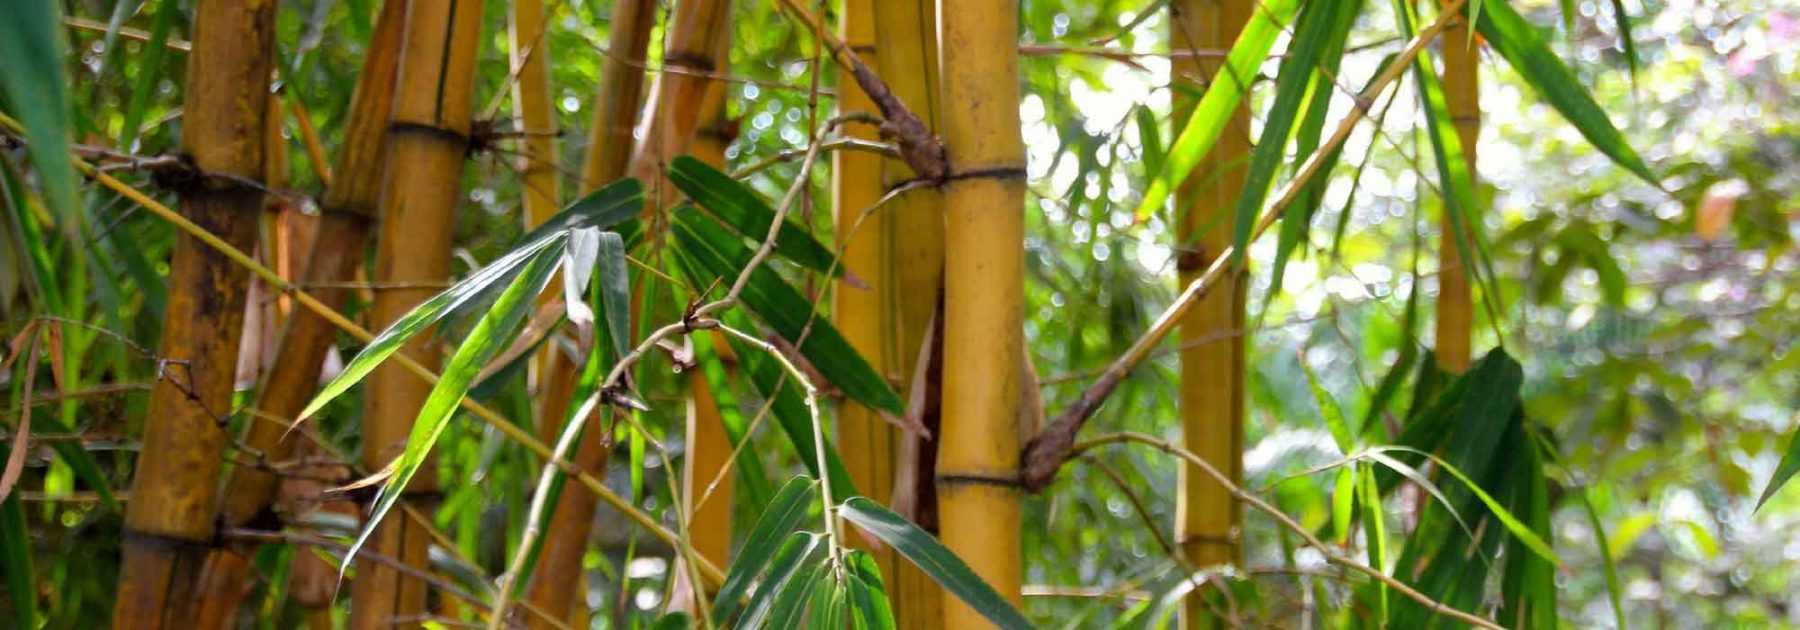 Bambou géant: Plantation, utilisation en haie brise-vue